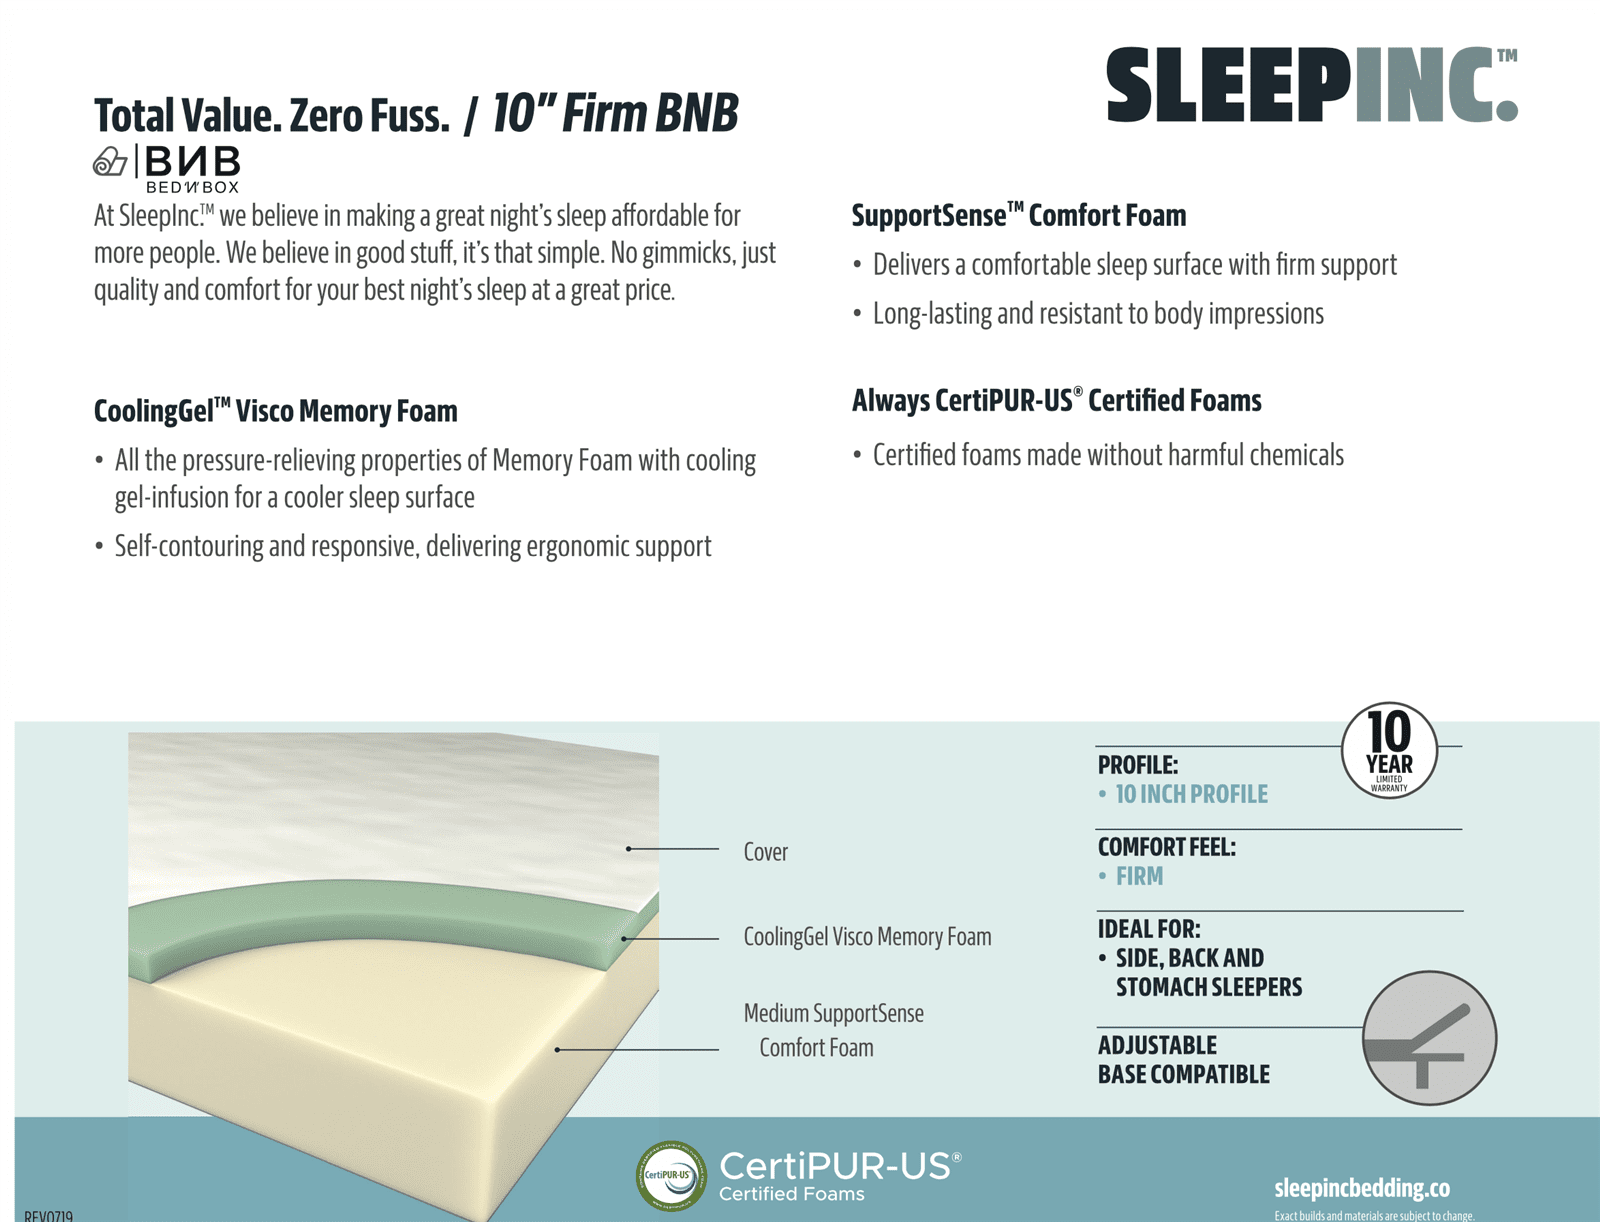 Sleep Inc S20410 10" Firm Gel Memory Foam Mattress